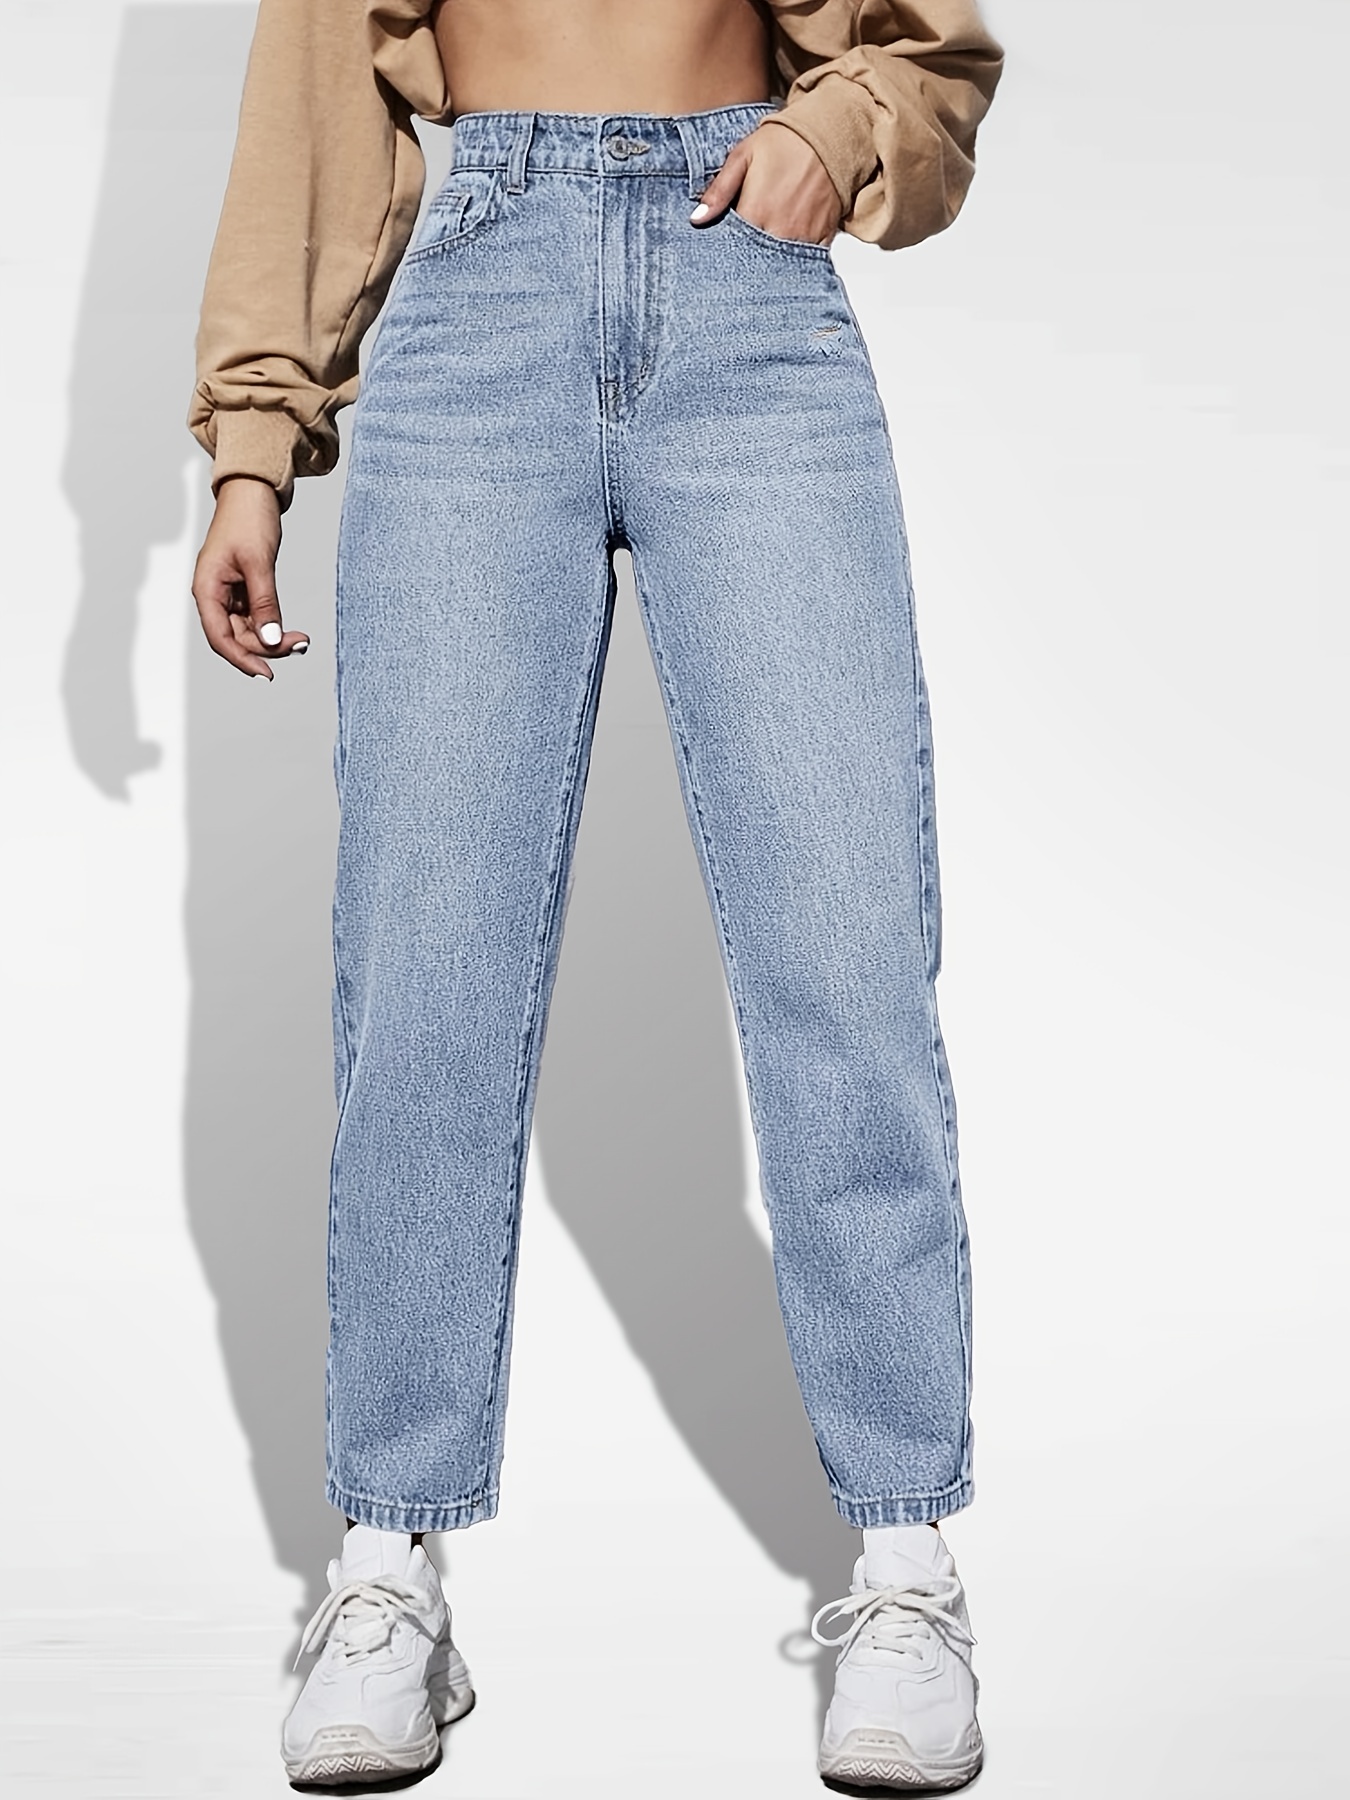 Jeans rectos de talle alto * pantalones de mezclilla holgados de tiro alto  con bolsillos oblicuos, jeans y ropa de mujer